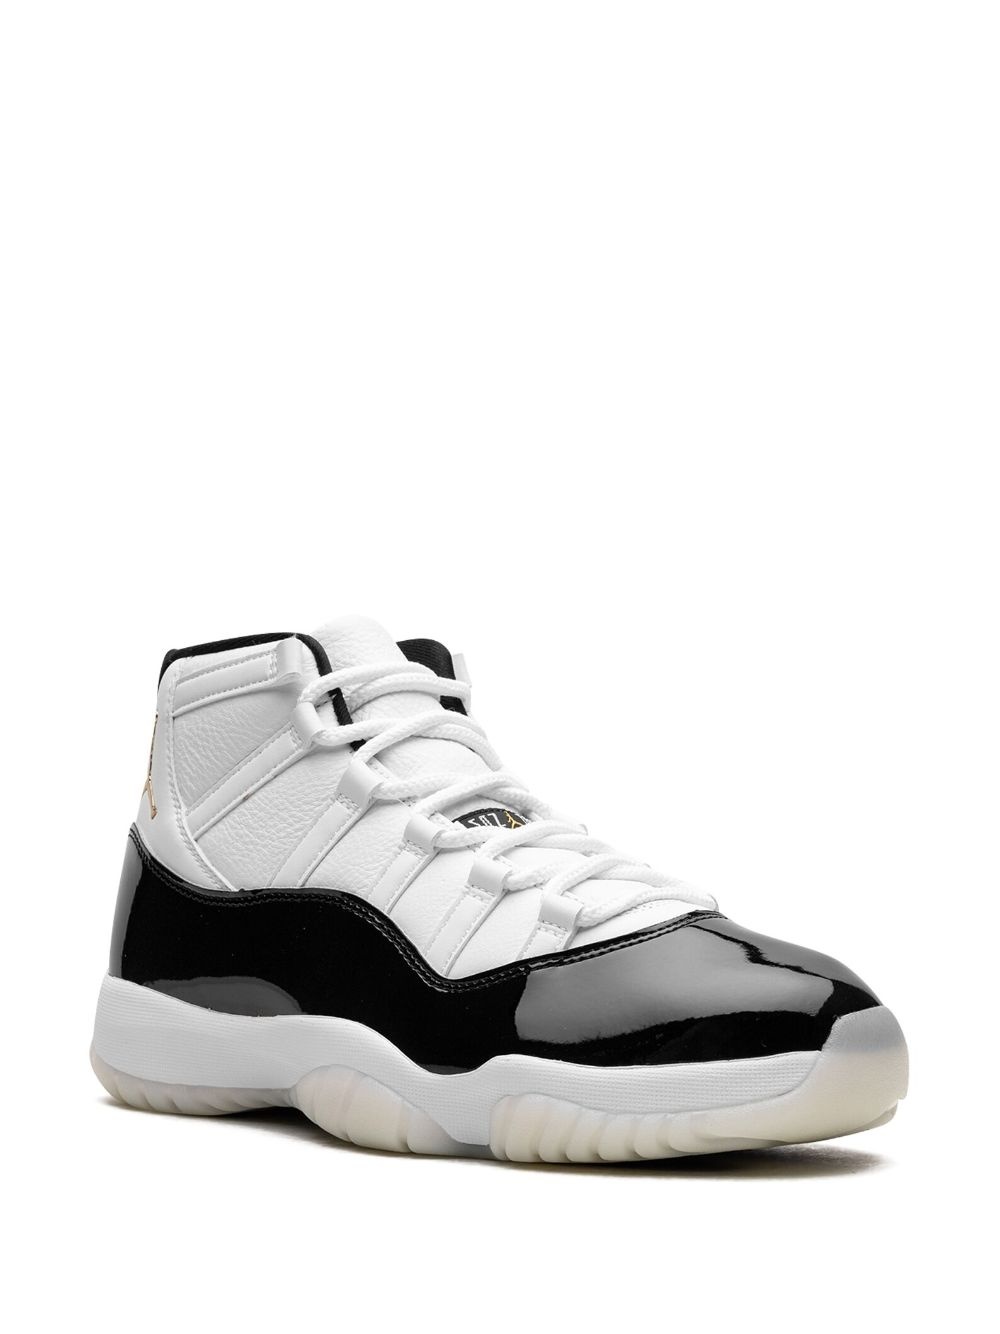 Jordan Air Jordan 11 DMP Concord 2023 sneakers | REVERSIBLE